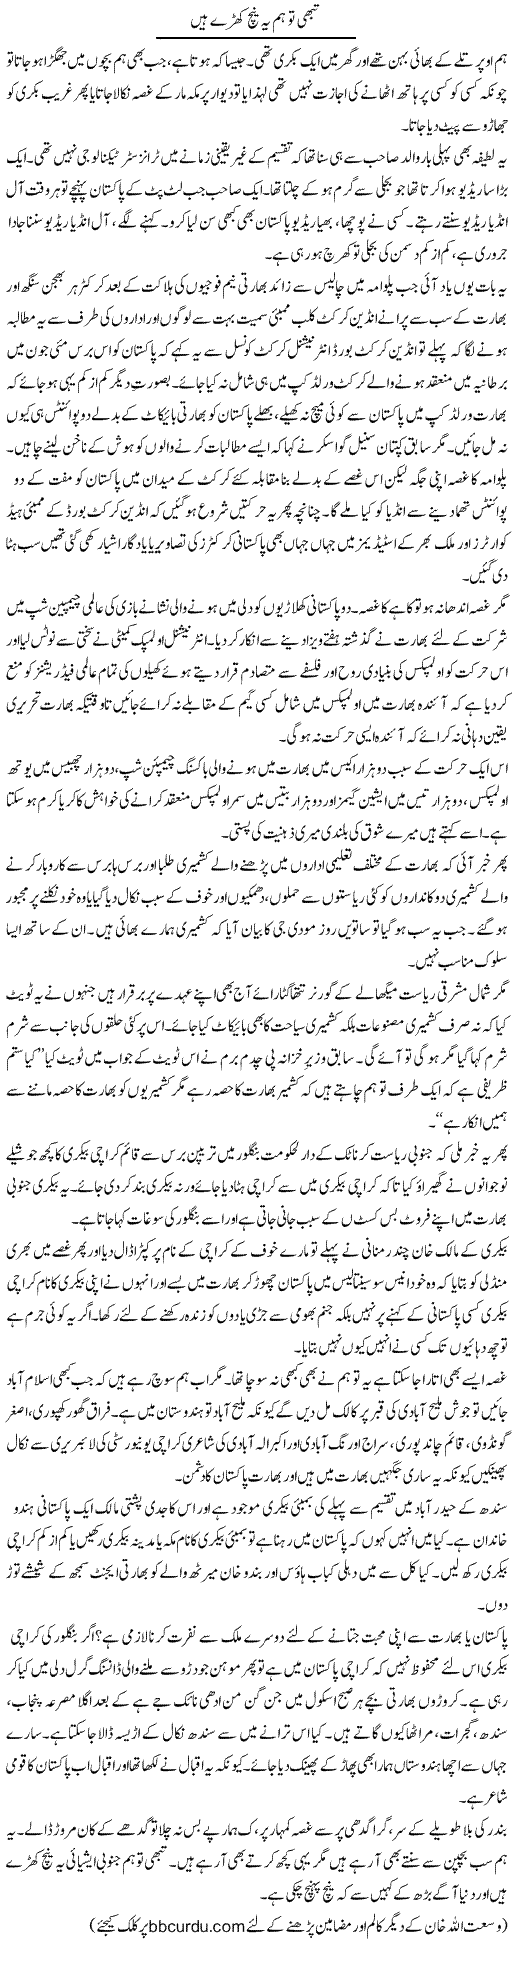 Tabhi To Hum Yahinch Khare Hain | Wusat Ullah Khan | Daily Urdu Columns